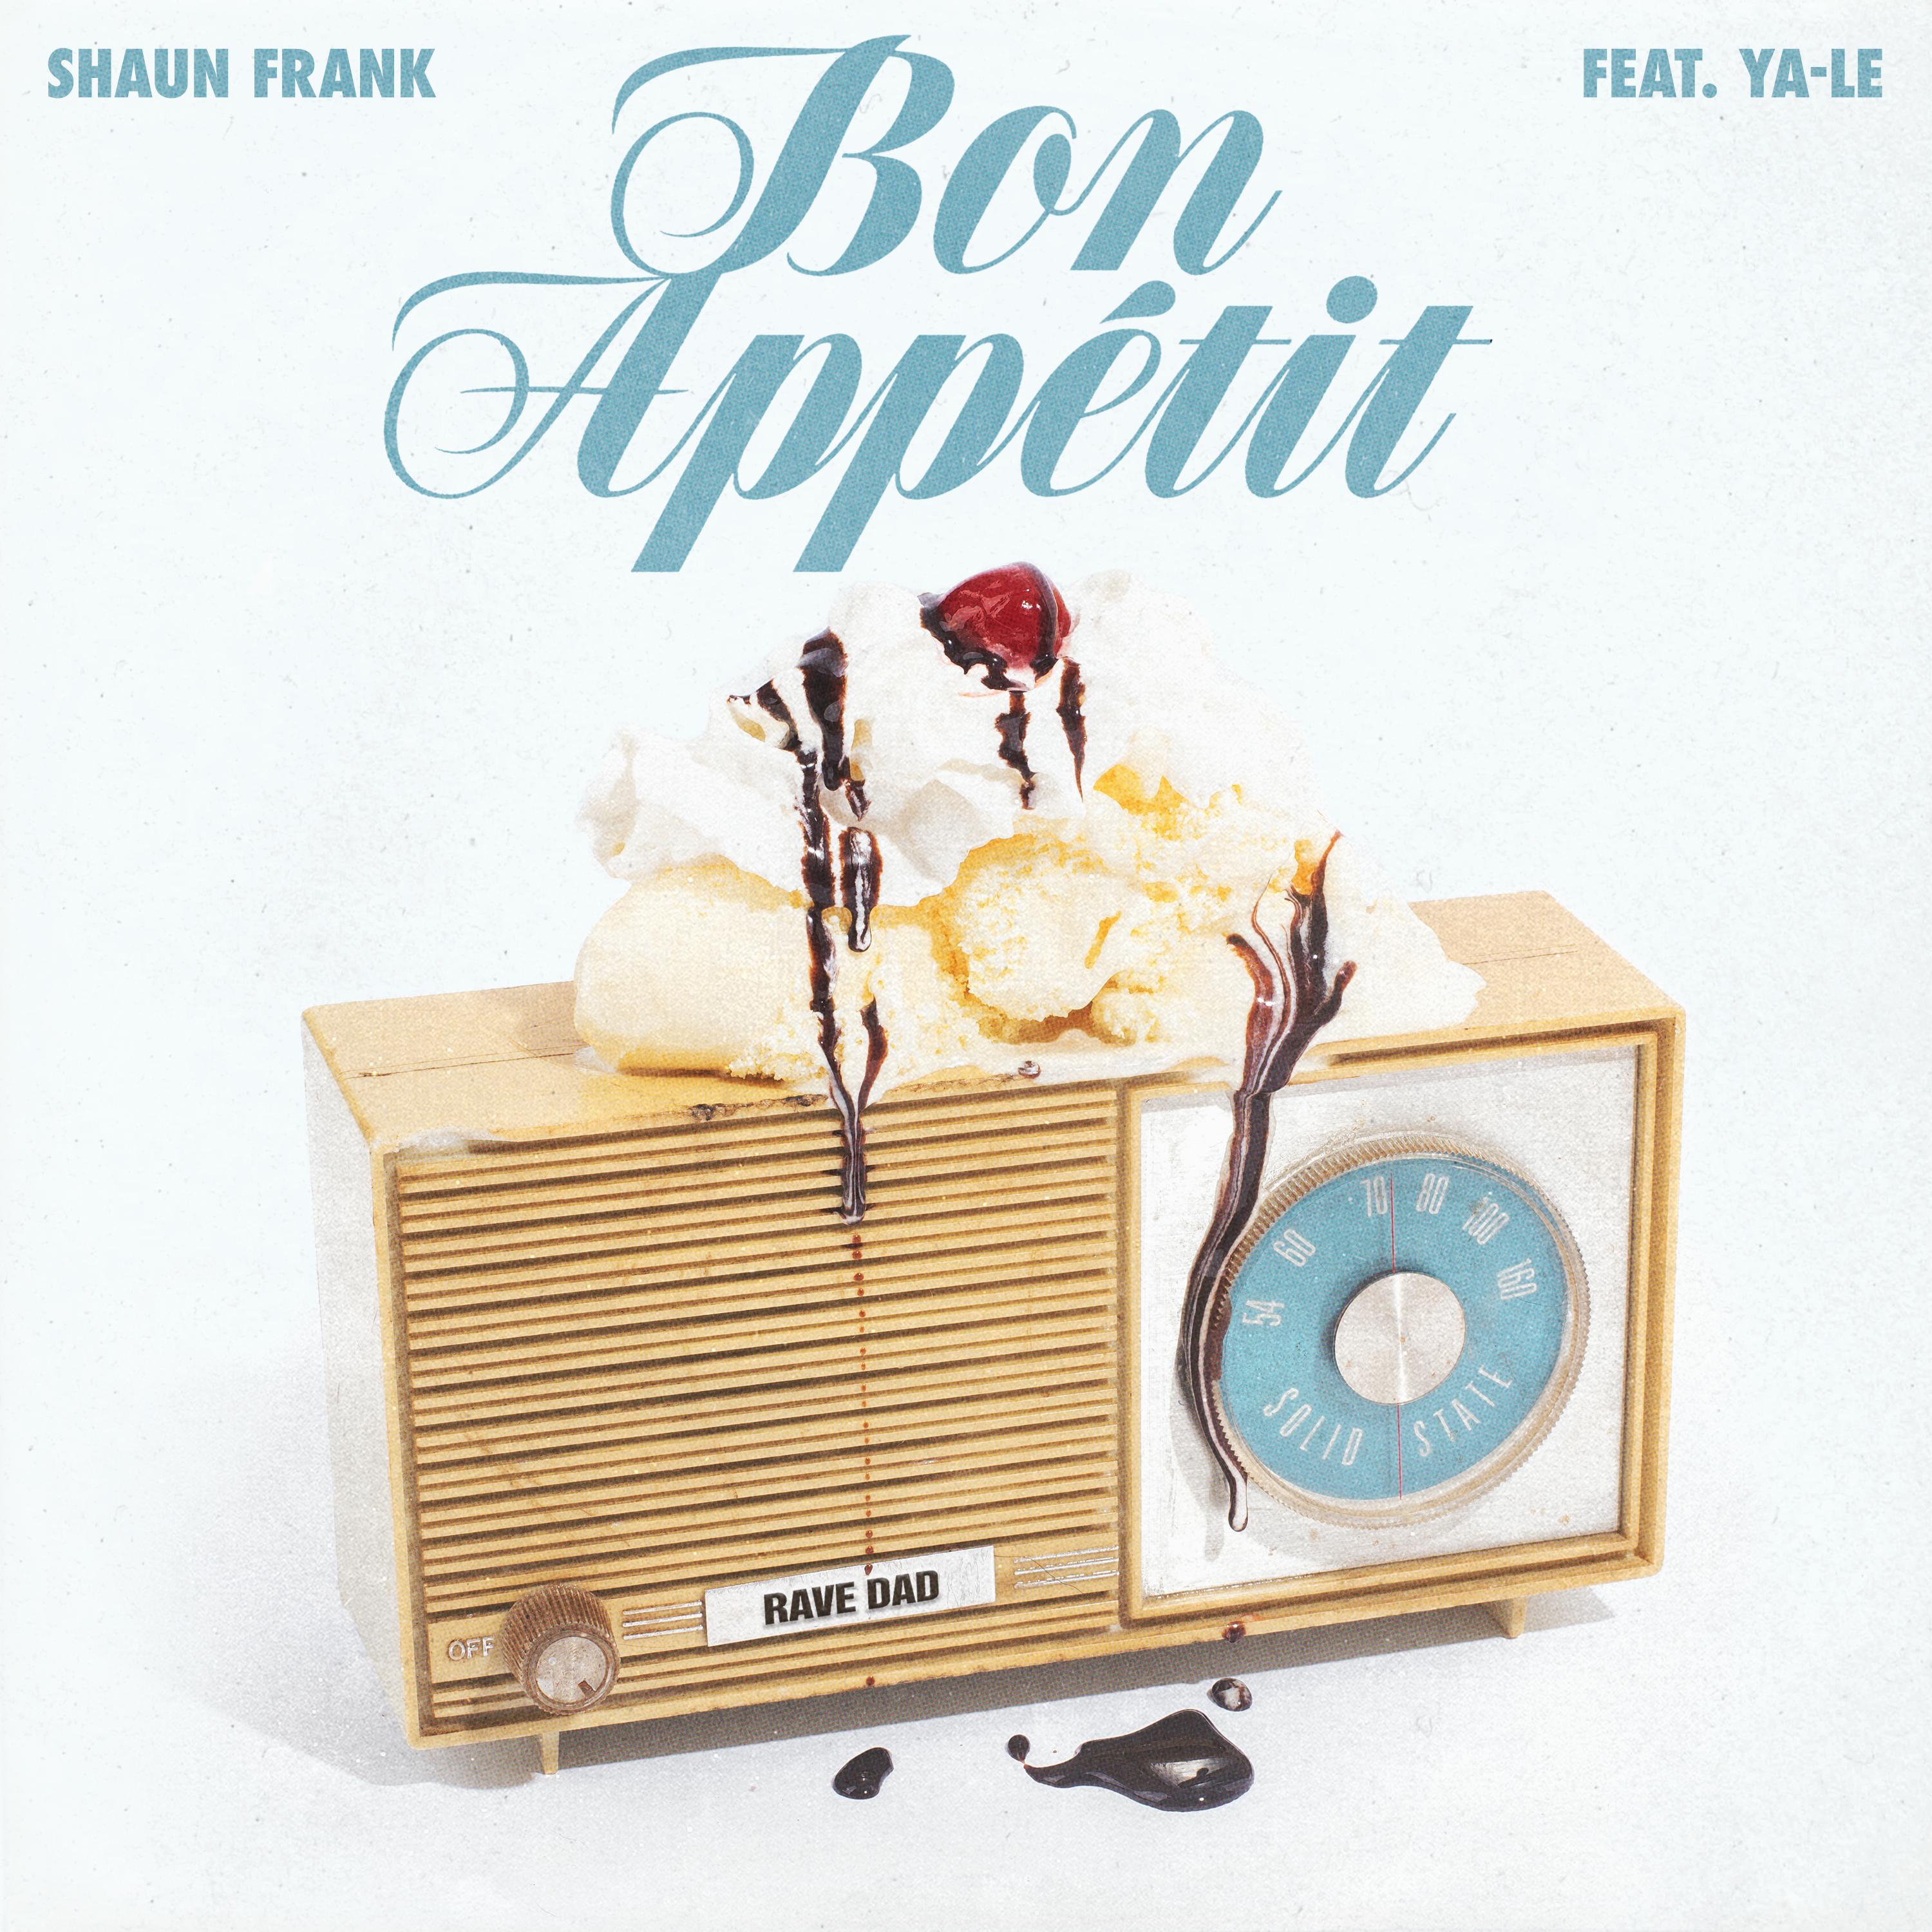 Bon Appétit歌词 歌手Shaun Frank / YA-LE-专辑Bon Appétit-单曲《Bon Appétit》LRC歌词下载